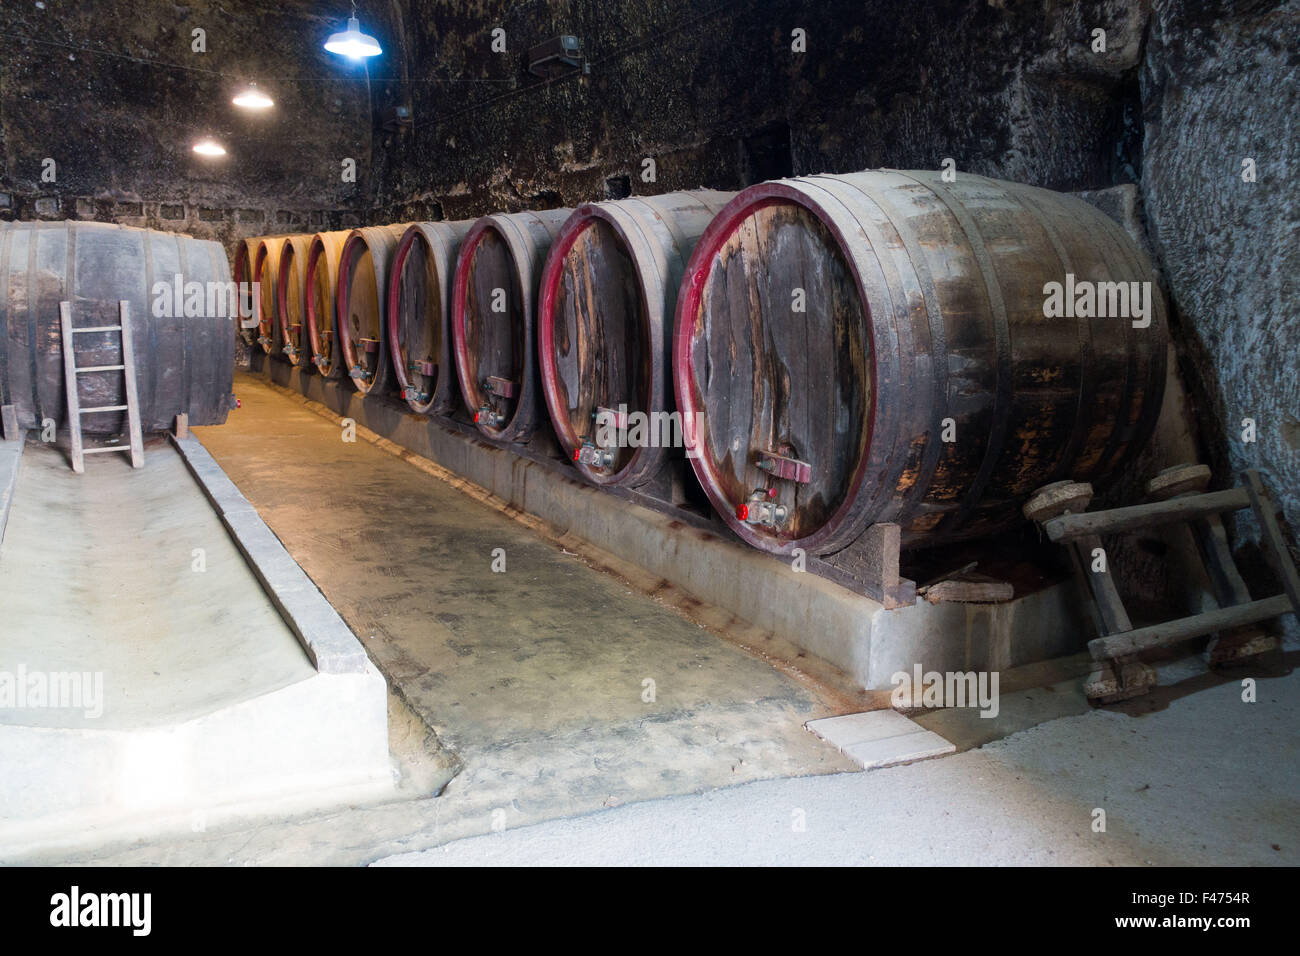 Vieux tonneaux de vin dans la forteresse souterraine du Château de Brézé, France Banque D'Images